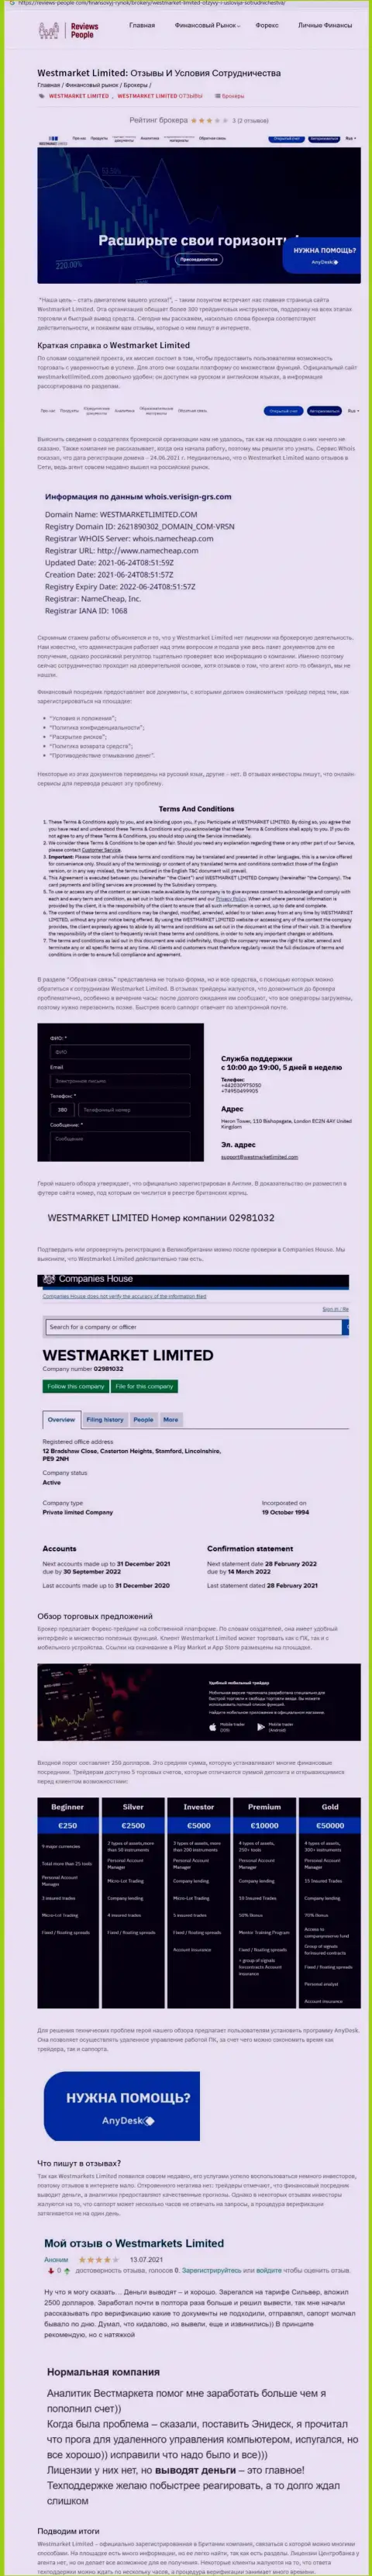 Информация о WestMarket Limited на сайте ревиевс-пеопле ком